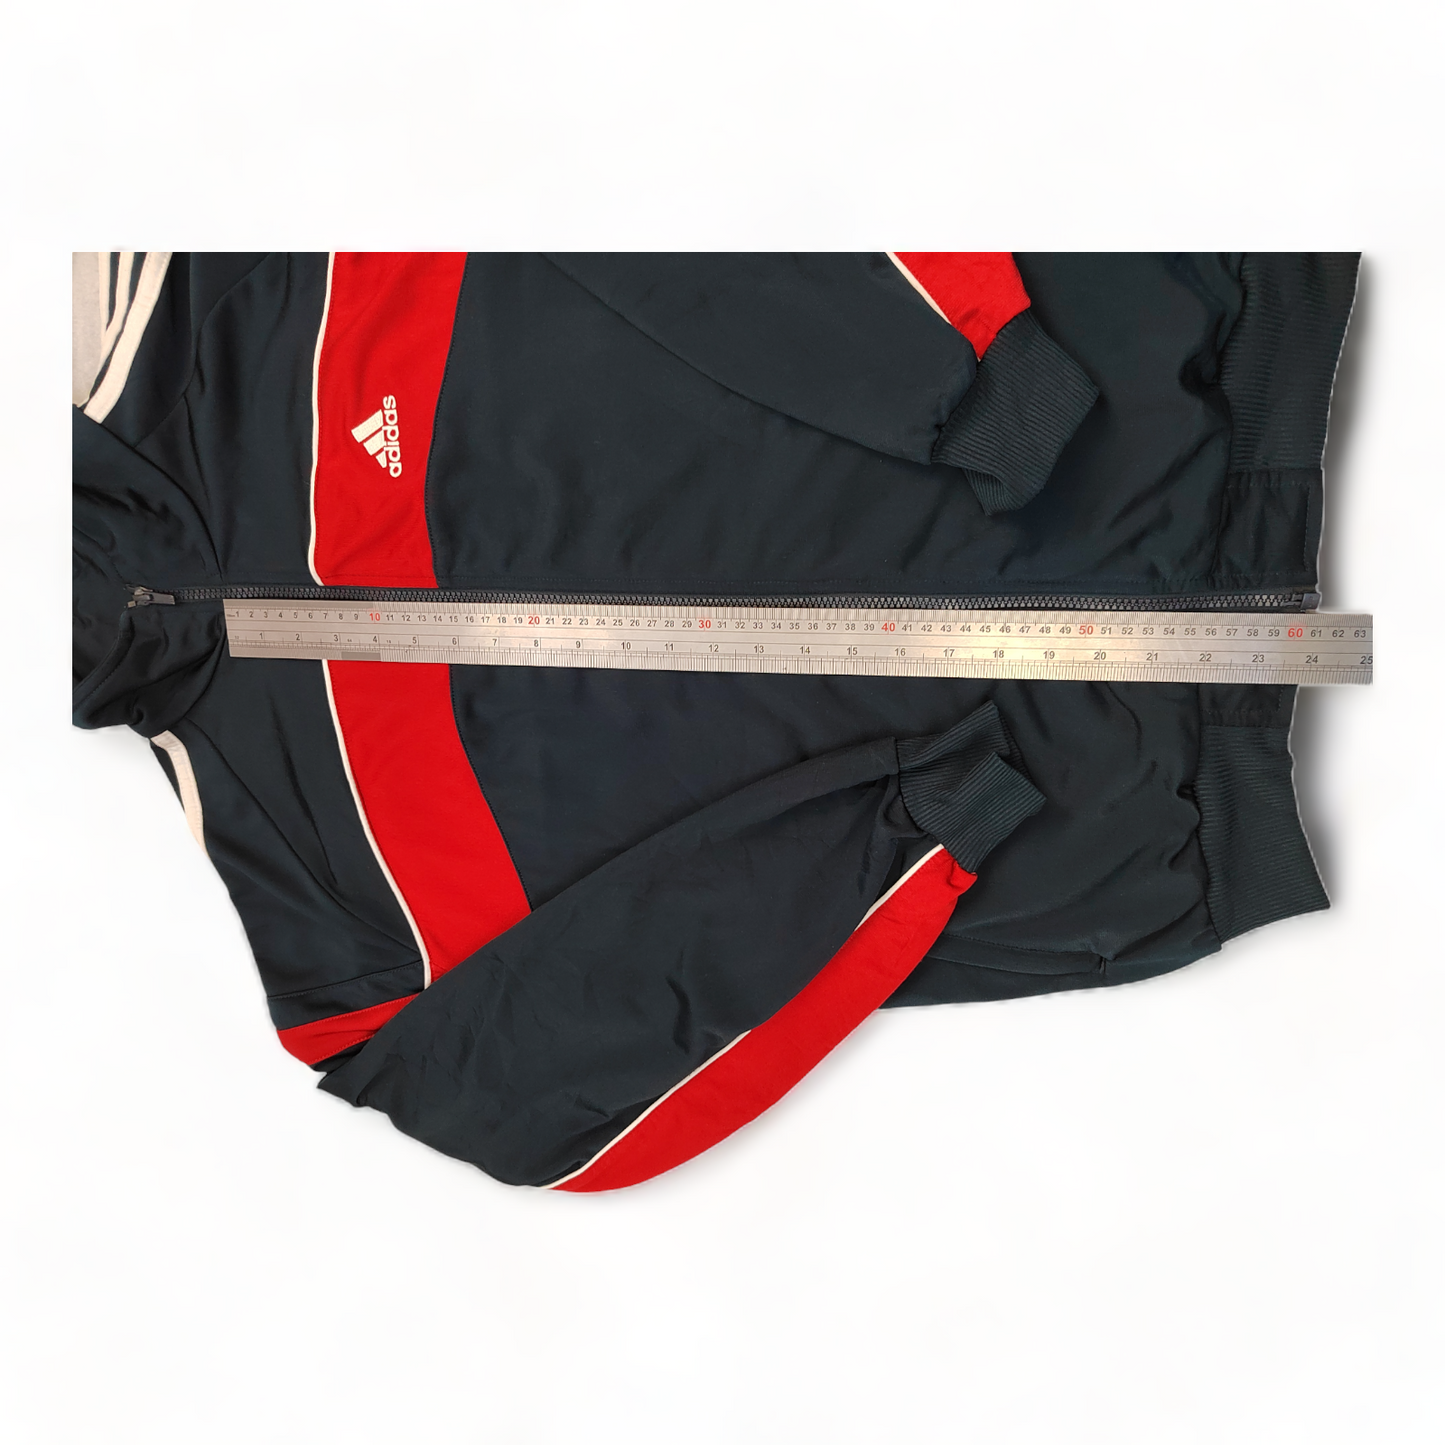 Adidas Jumper Men’s Large Black Red Zip Up Vintage